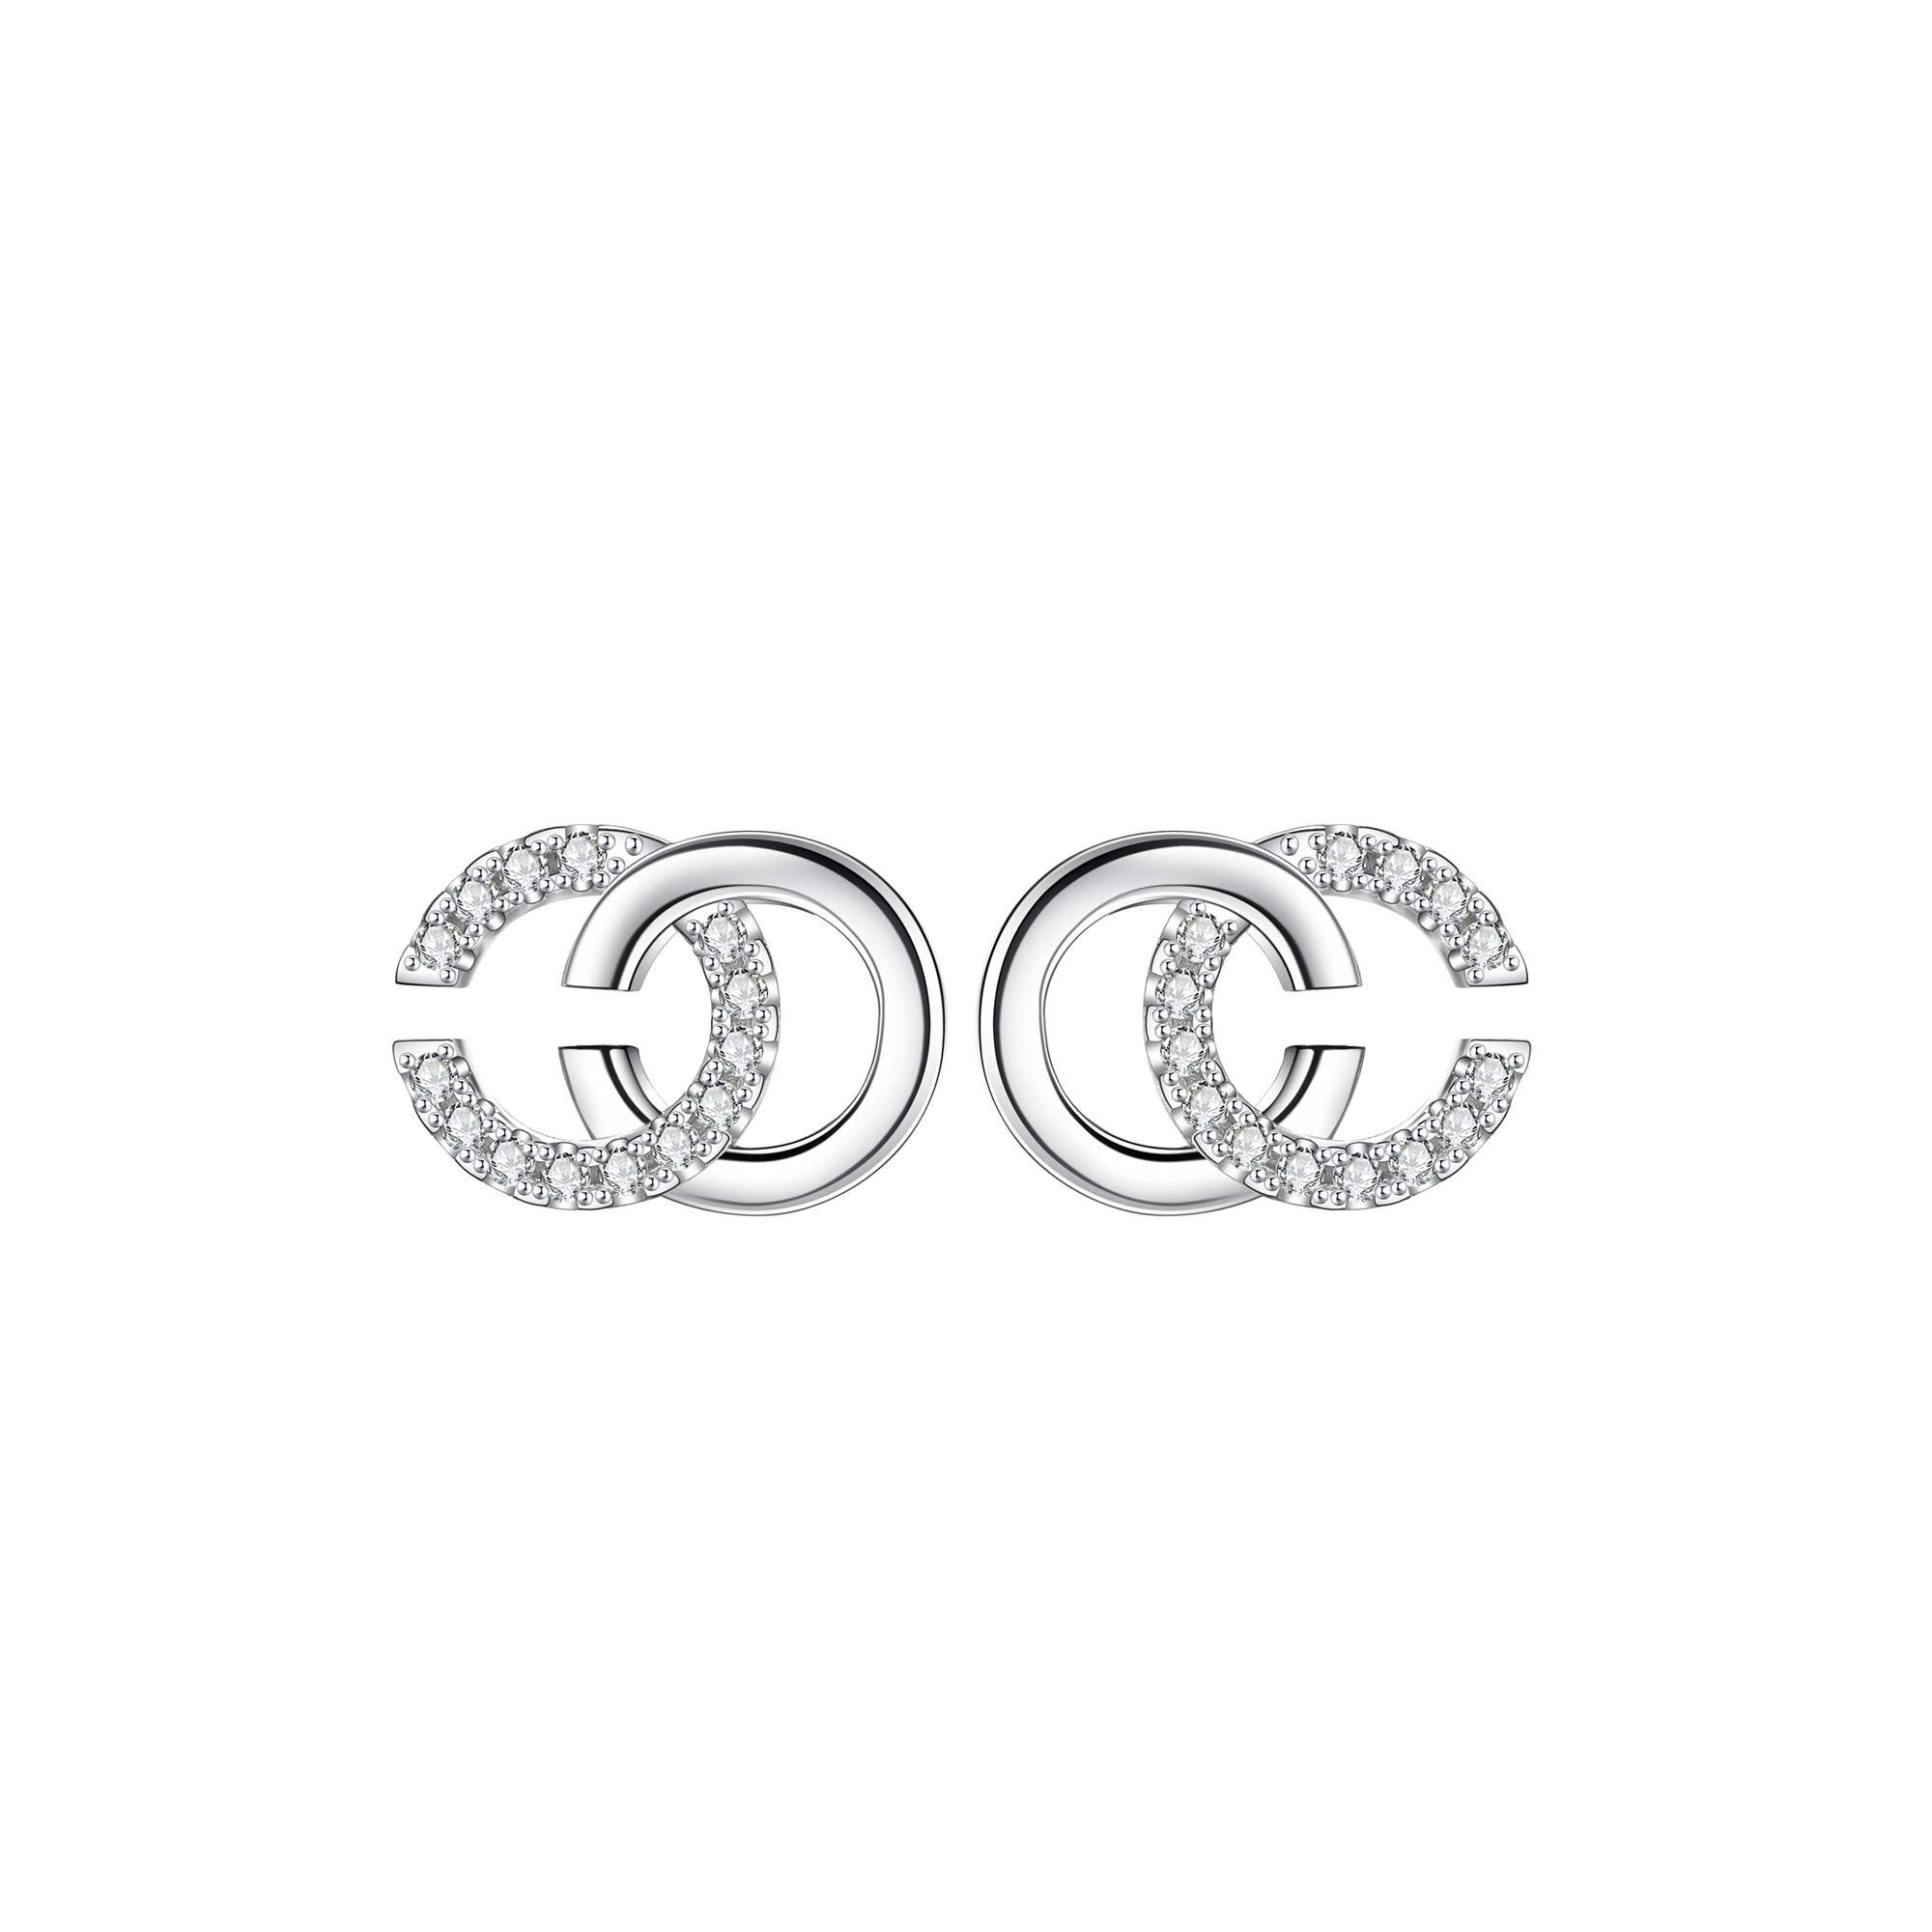 Housruse Ohrstecker-Set »Ohrstecker Silber 925 Damen Ohrringe CC mit 3A  Zirkonia, Durchmesser 11mm« online kaufen | OTTO